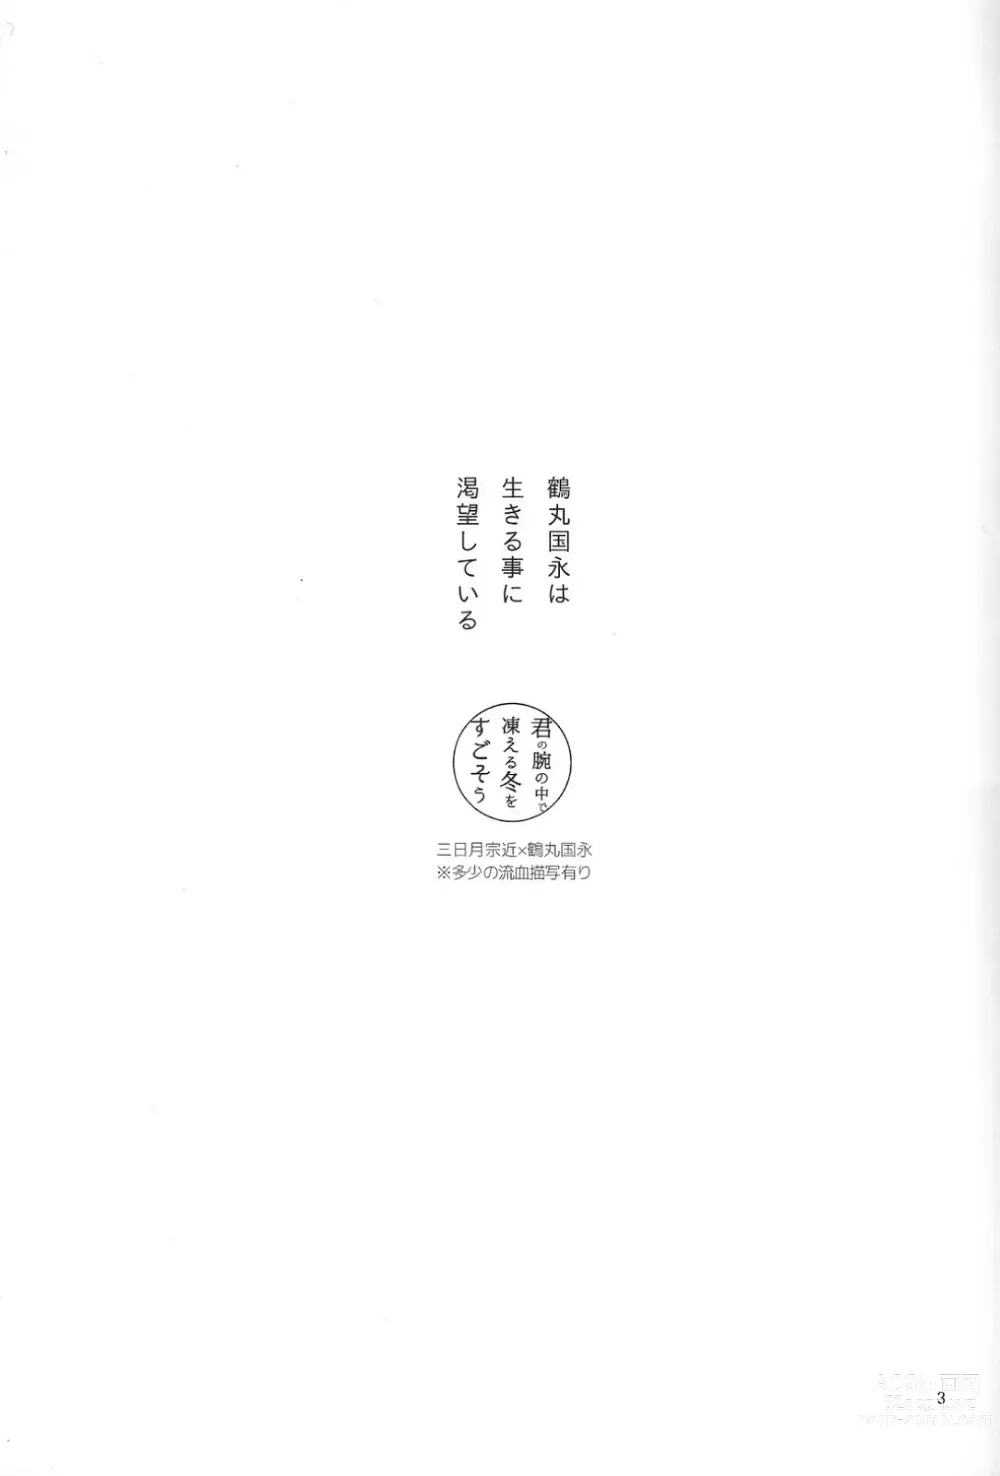 Page 4 of doujinshi Kimi no ude no naka de kogoeru fuyu o sugosou